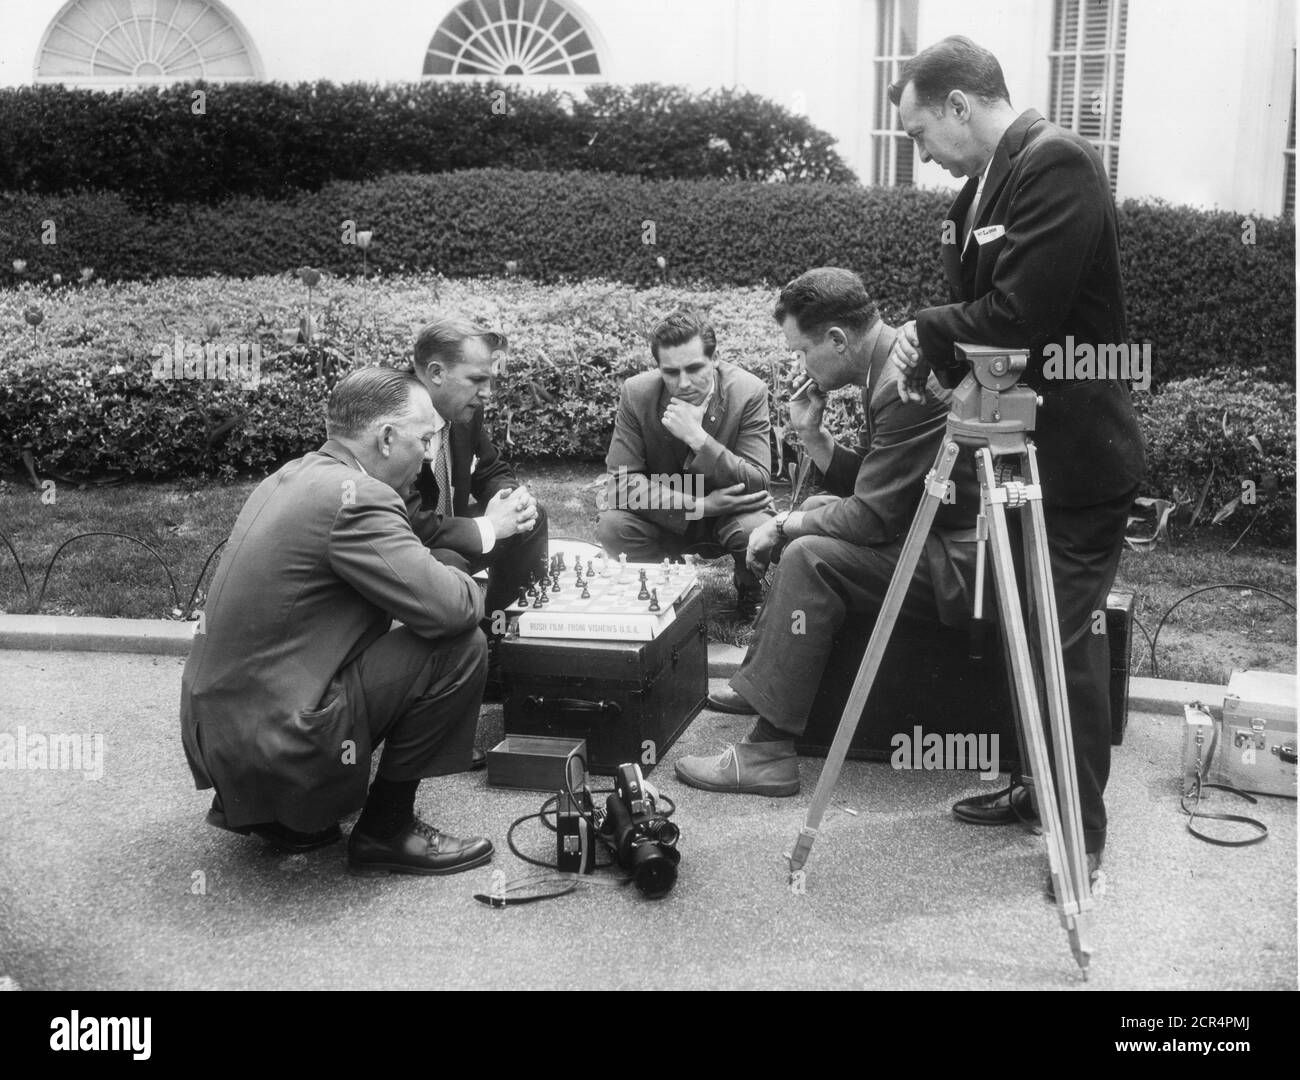 Les reporters et cameramen de la Maison Blanche jouent aux échecs sur une affaire d'équipement en attendant les nouvelles du personnel de la Maison Blanche, Washington, DC, 04/21/1961. (Photo d'Abbie Rowe/RBM Vintage Images) Banque D'Images